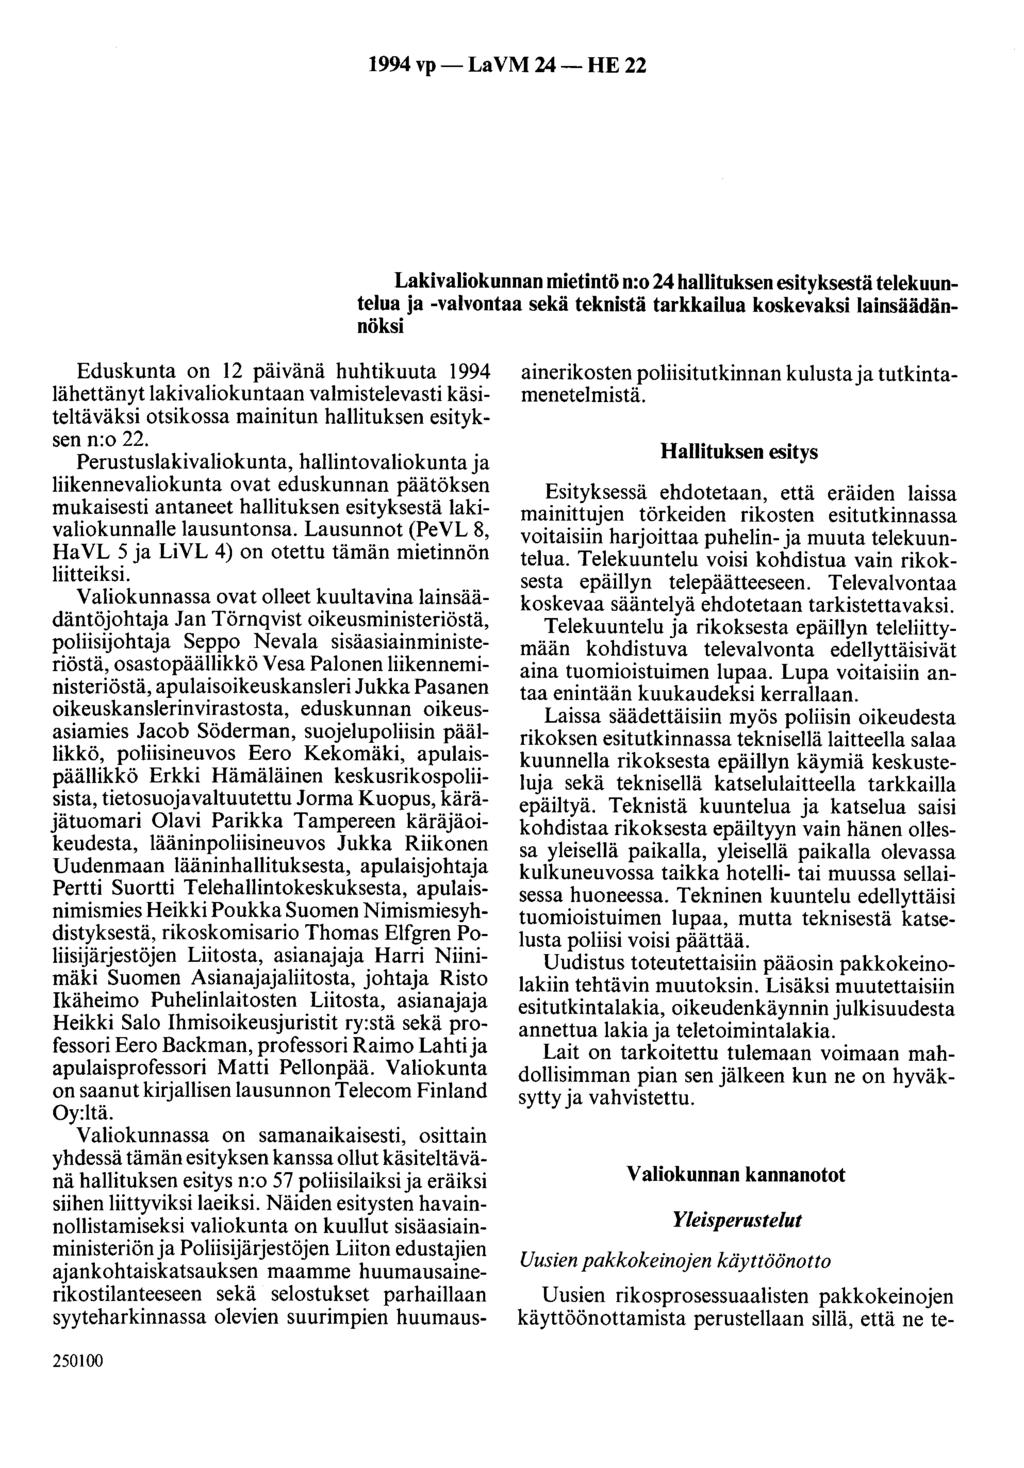 1994 vp- La VM 24- HE 22 Lakivaliokunnan mietintö n:o 24 hallituksen esityksestä telekuuntelua ja -valvontaa sekä teknistä tarkkailua koskevaksi lainsäädännöksi Eduskunta on 12 päivänä huhtikuuta